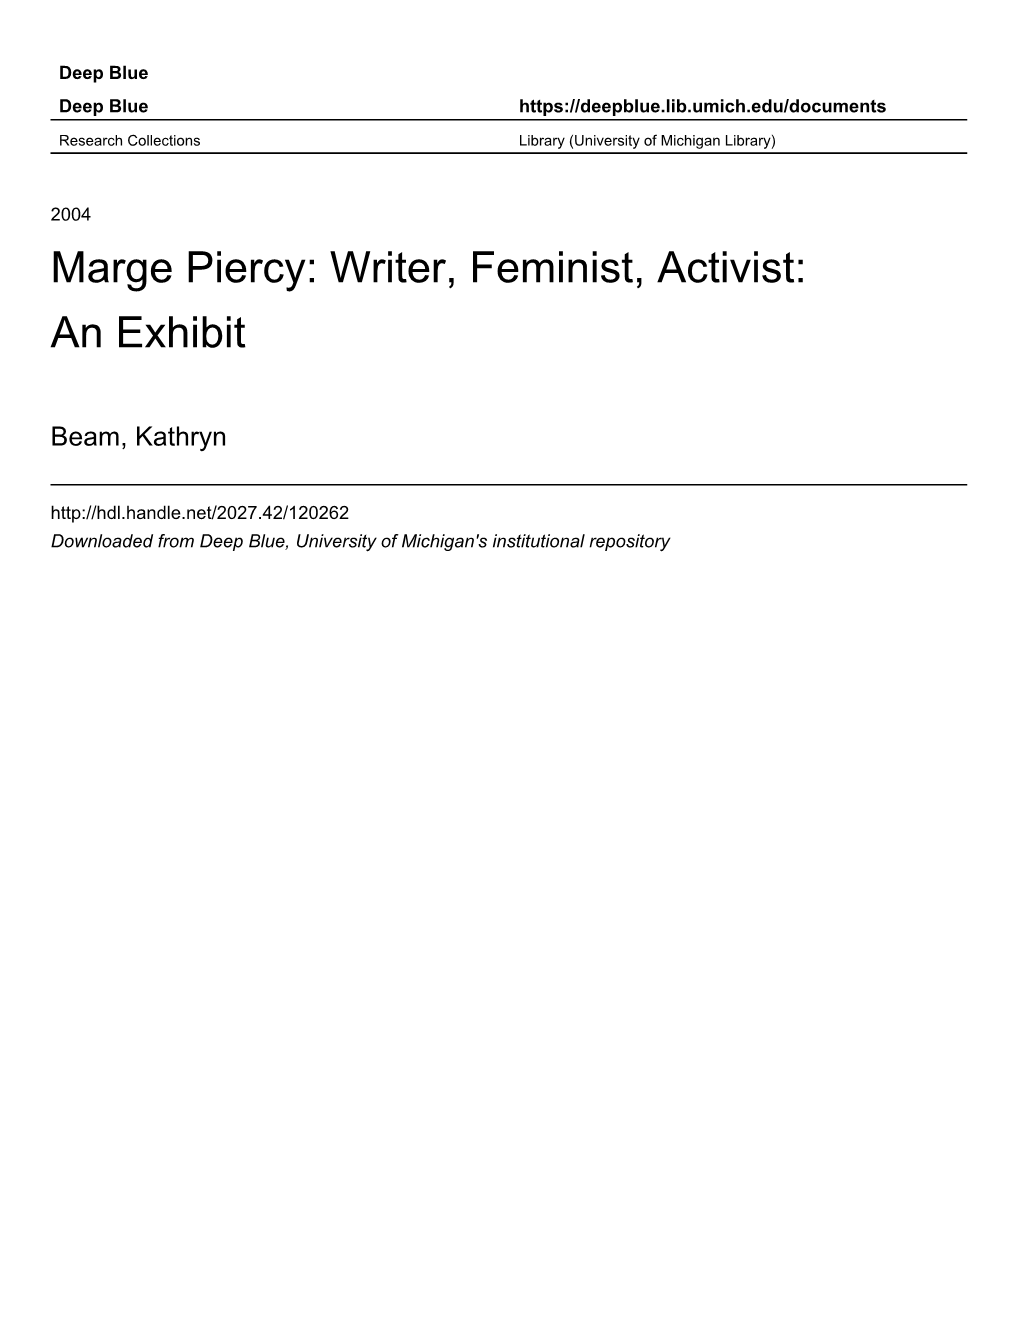 Marge Piercy: Writer, Feminist, Activist: an Exhibit